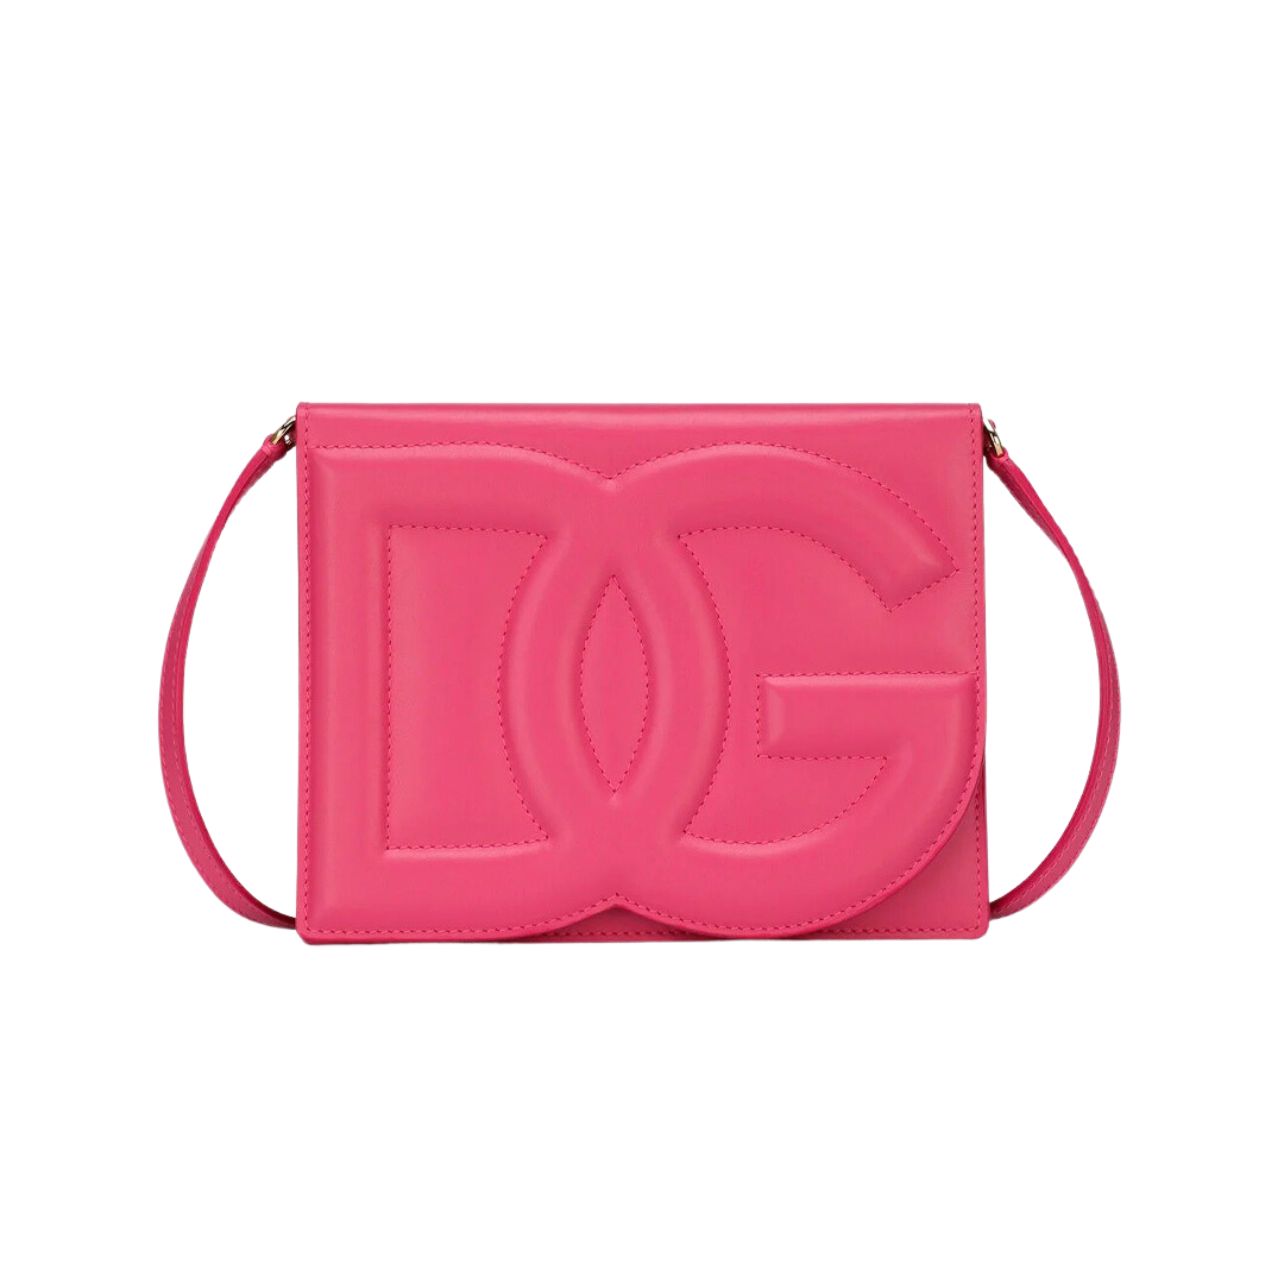 Dolce & Gabbana calfskin leather logo shoulder bag in deep pink